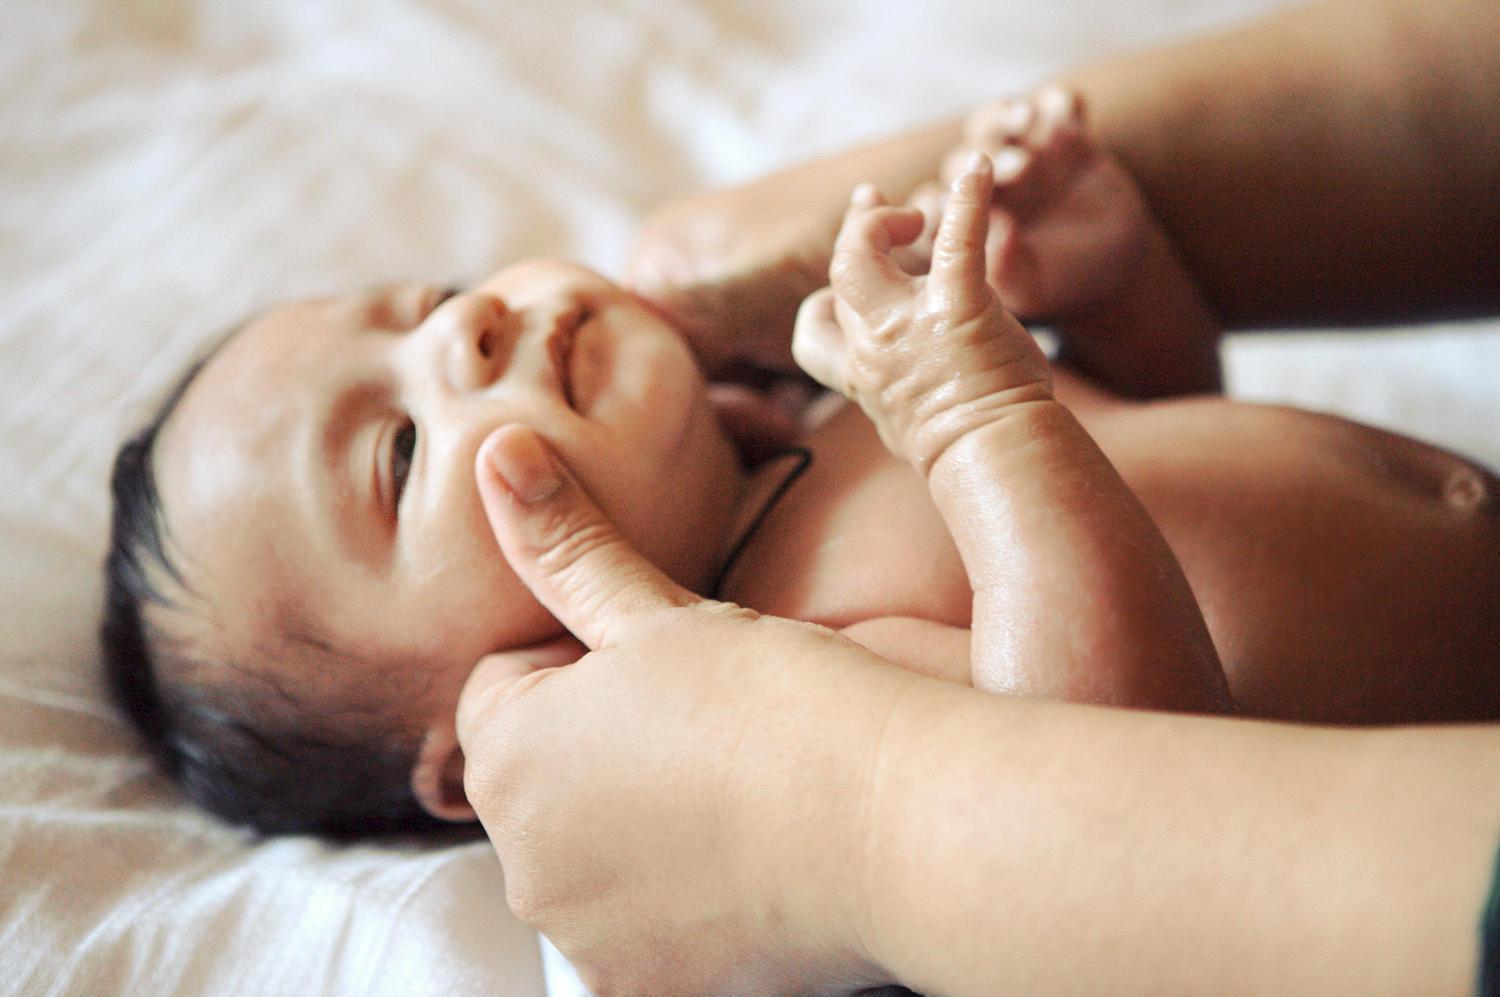 Массаж помогает недоношенным малышам быстрее развиться физически